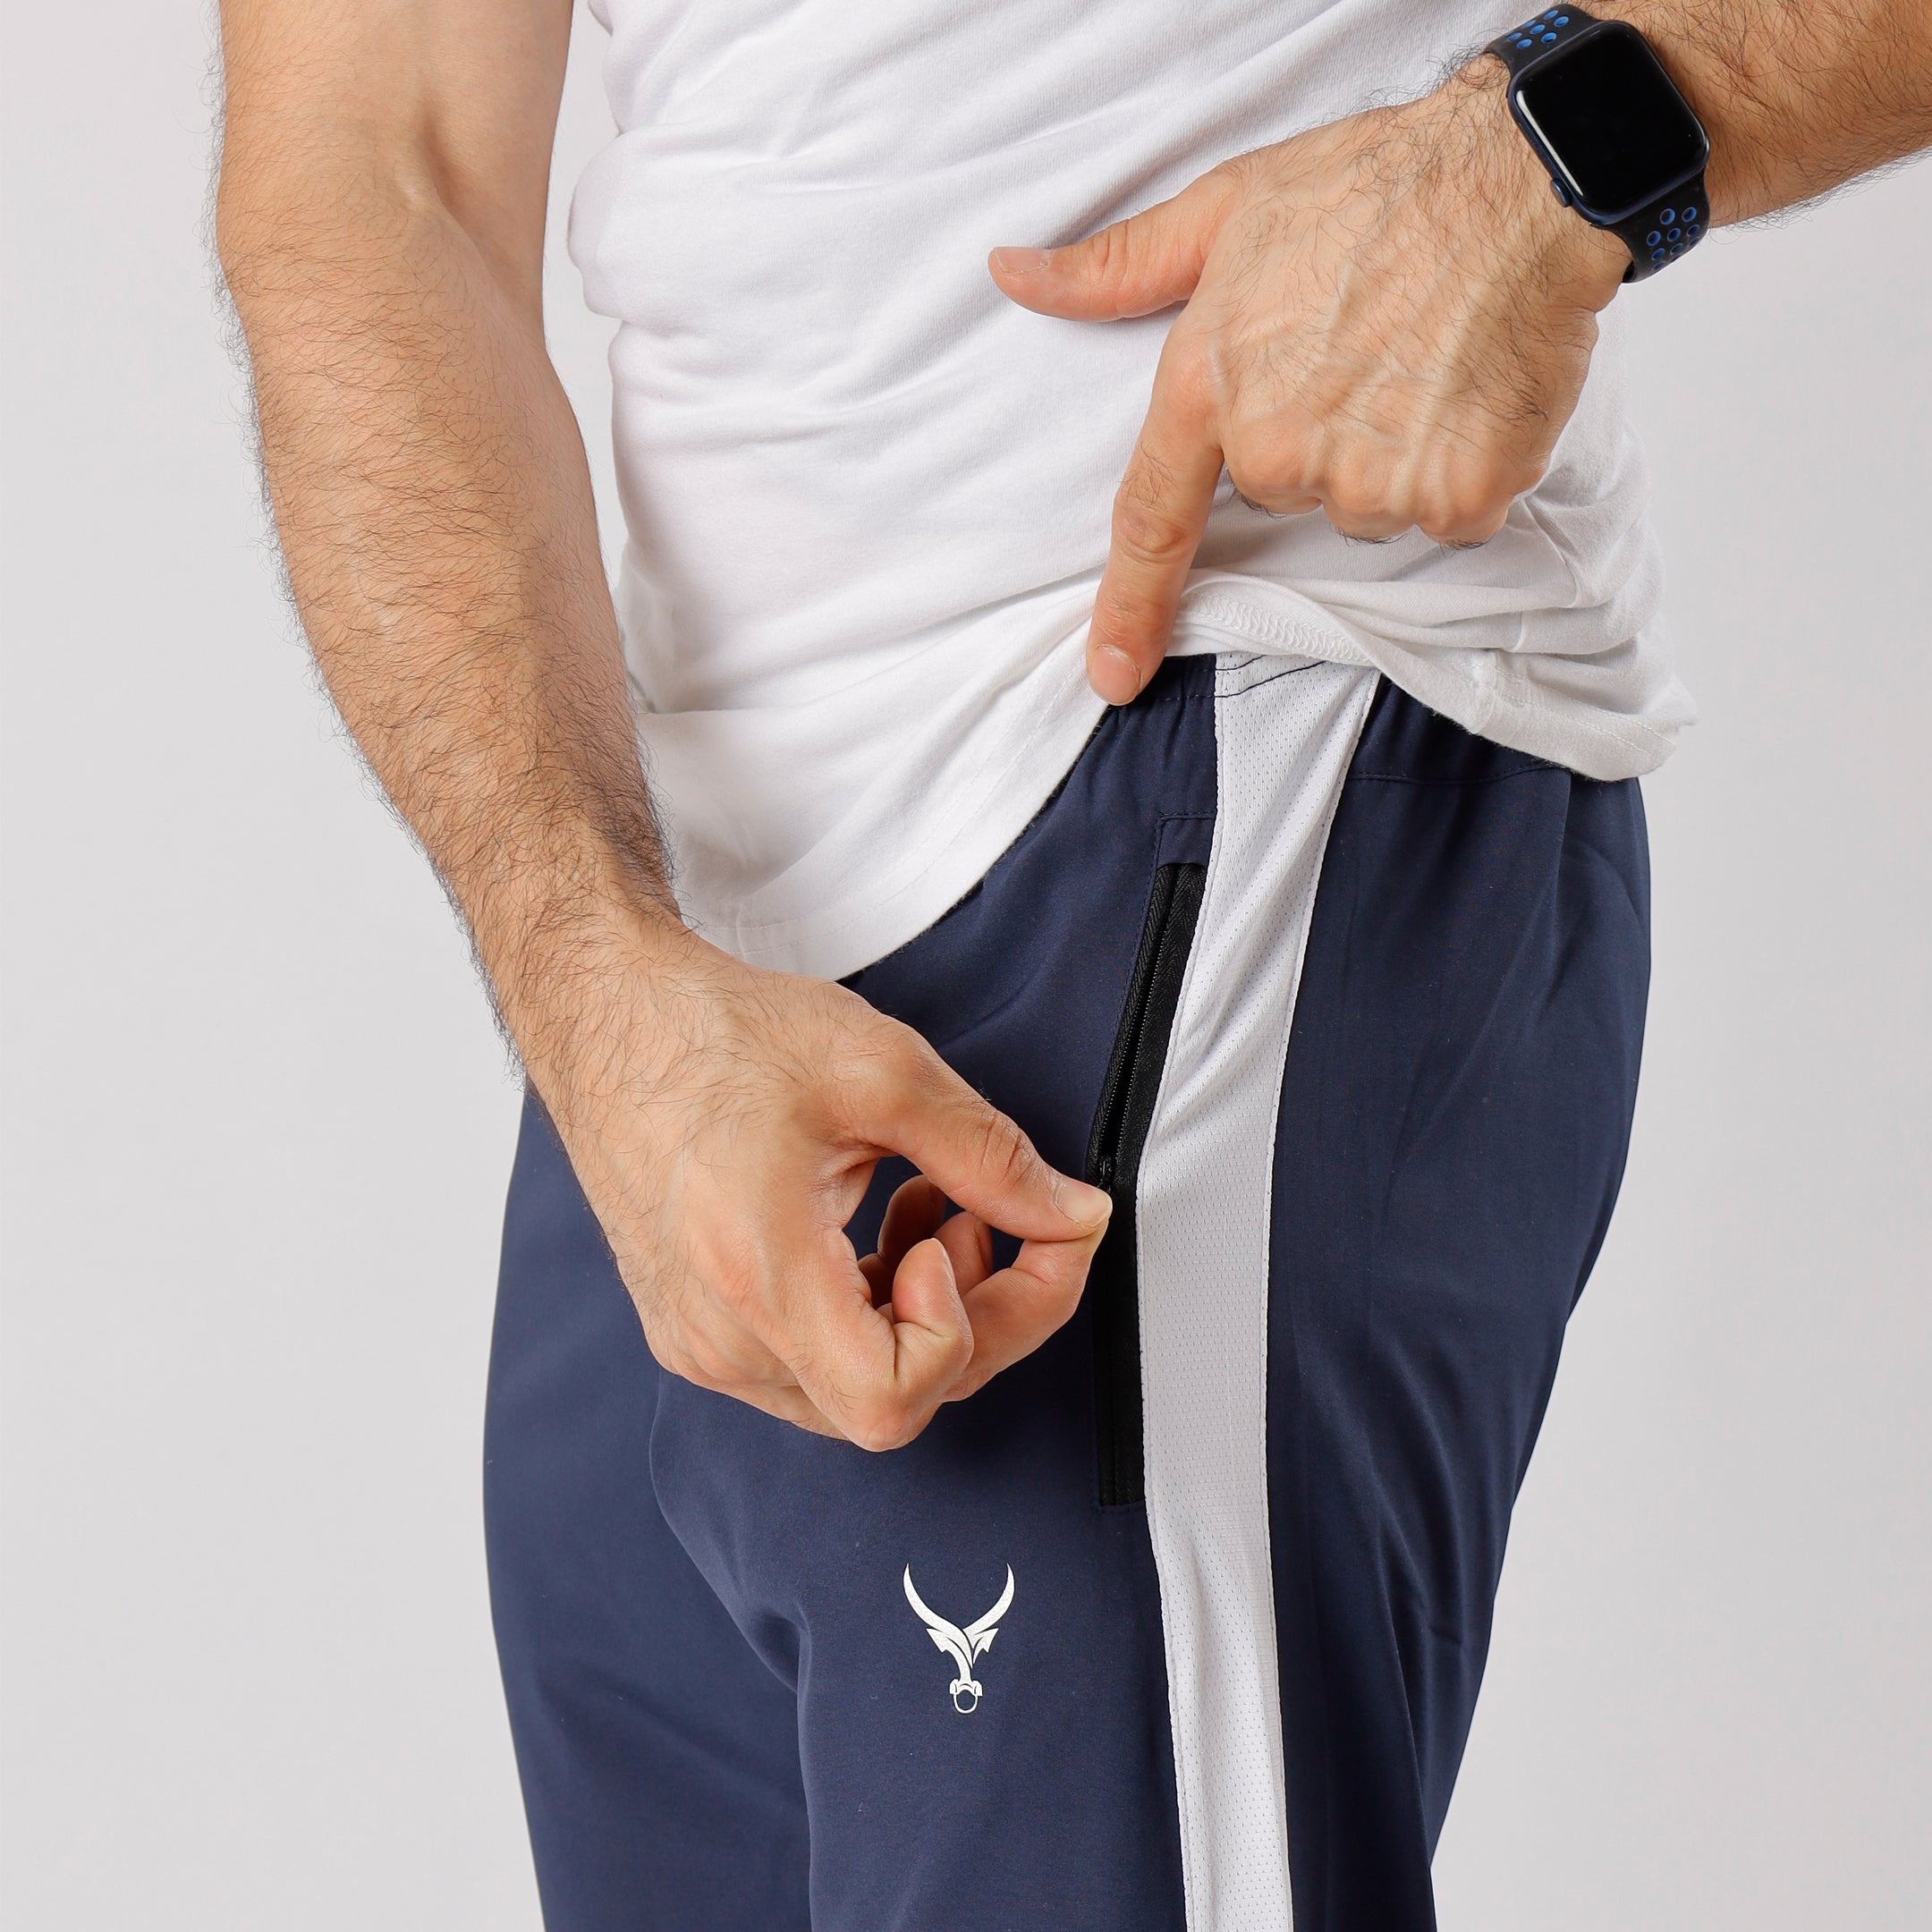 IRONGEAR Training Trouser For Men